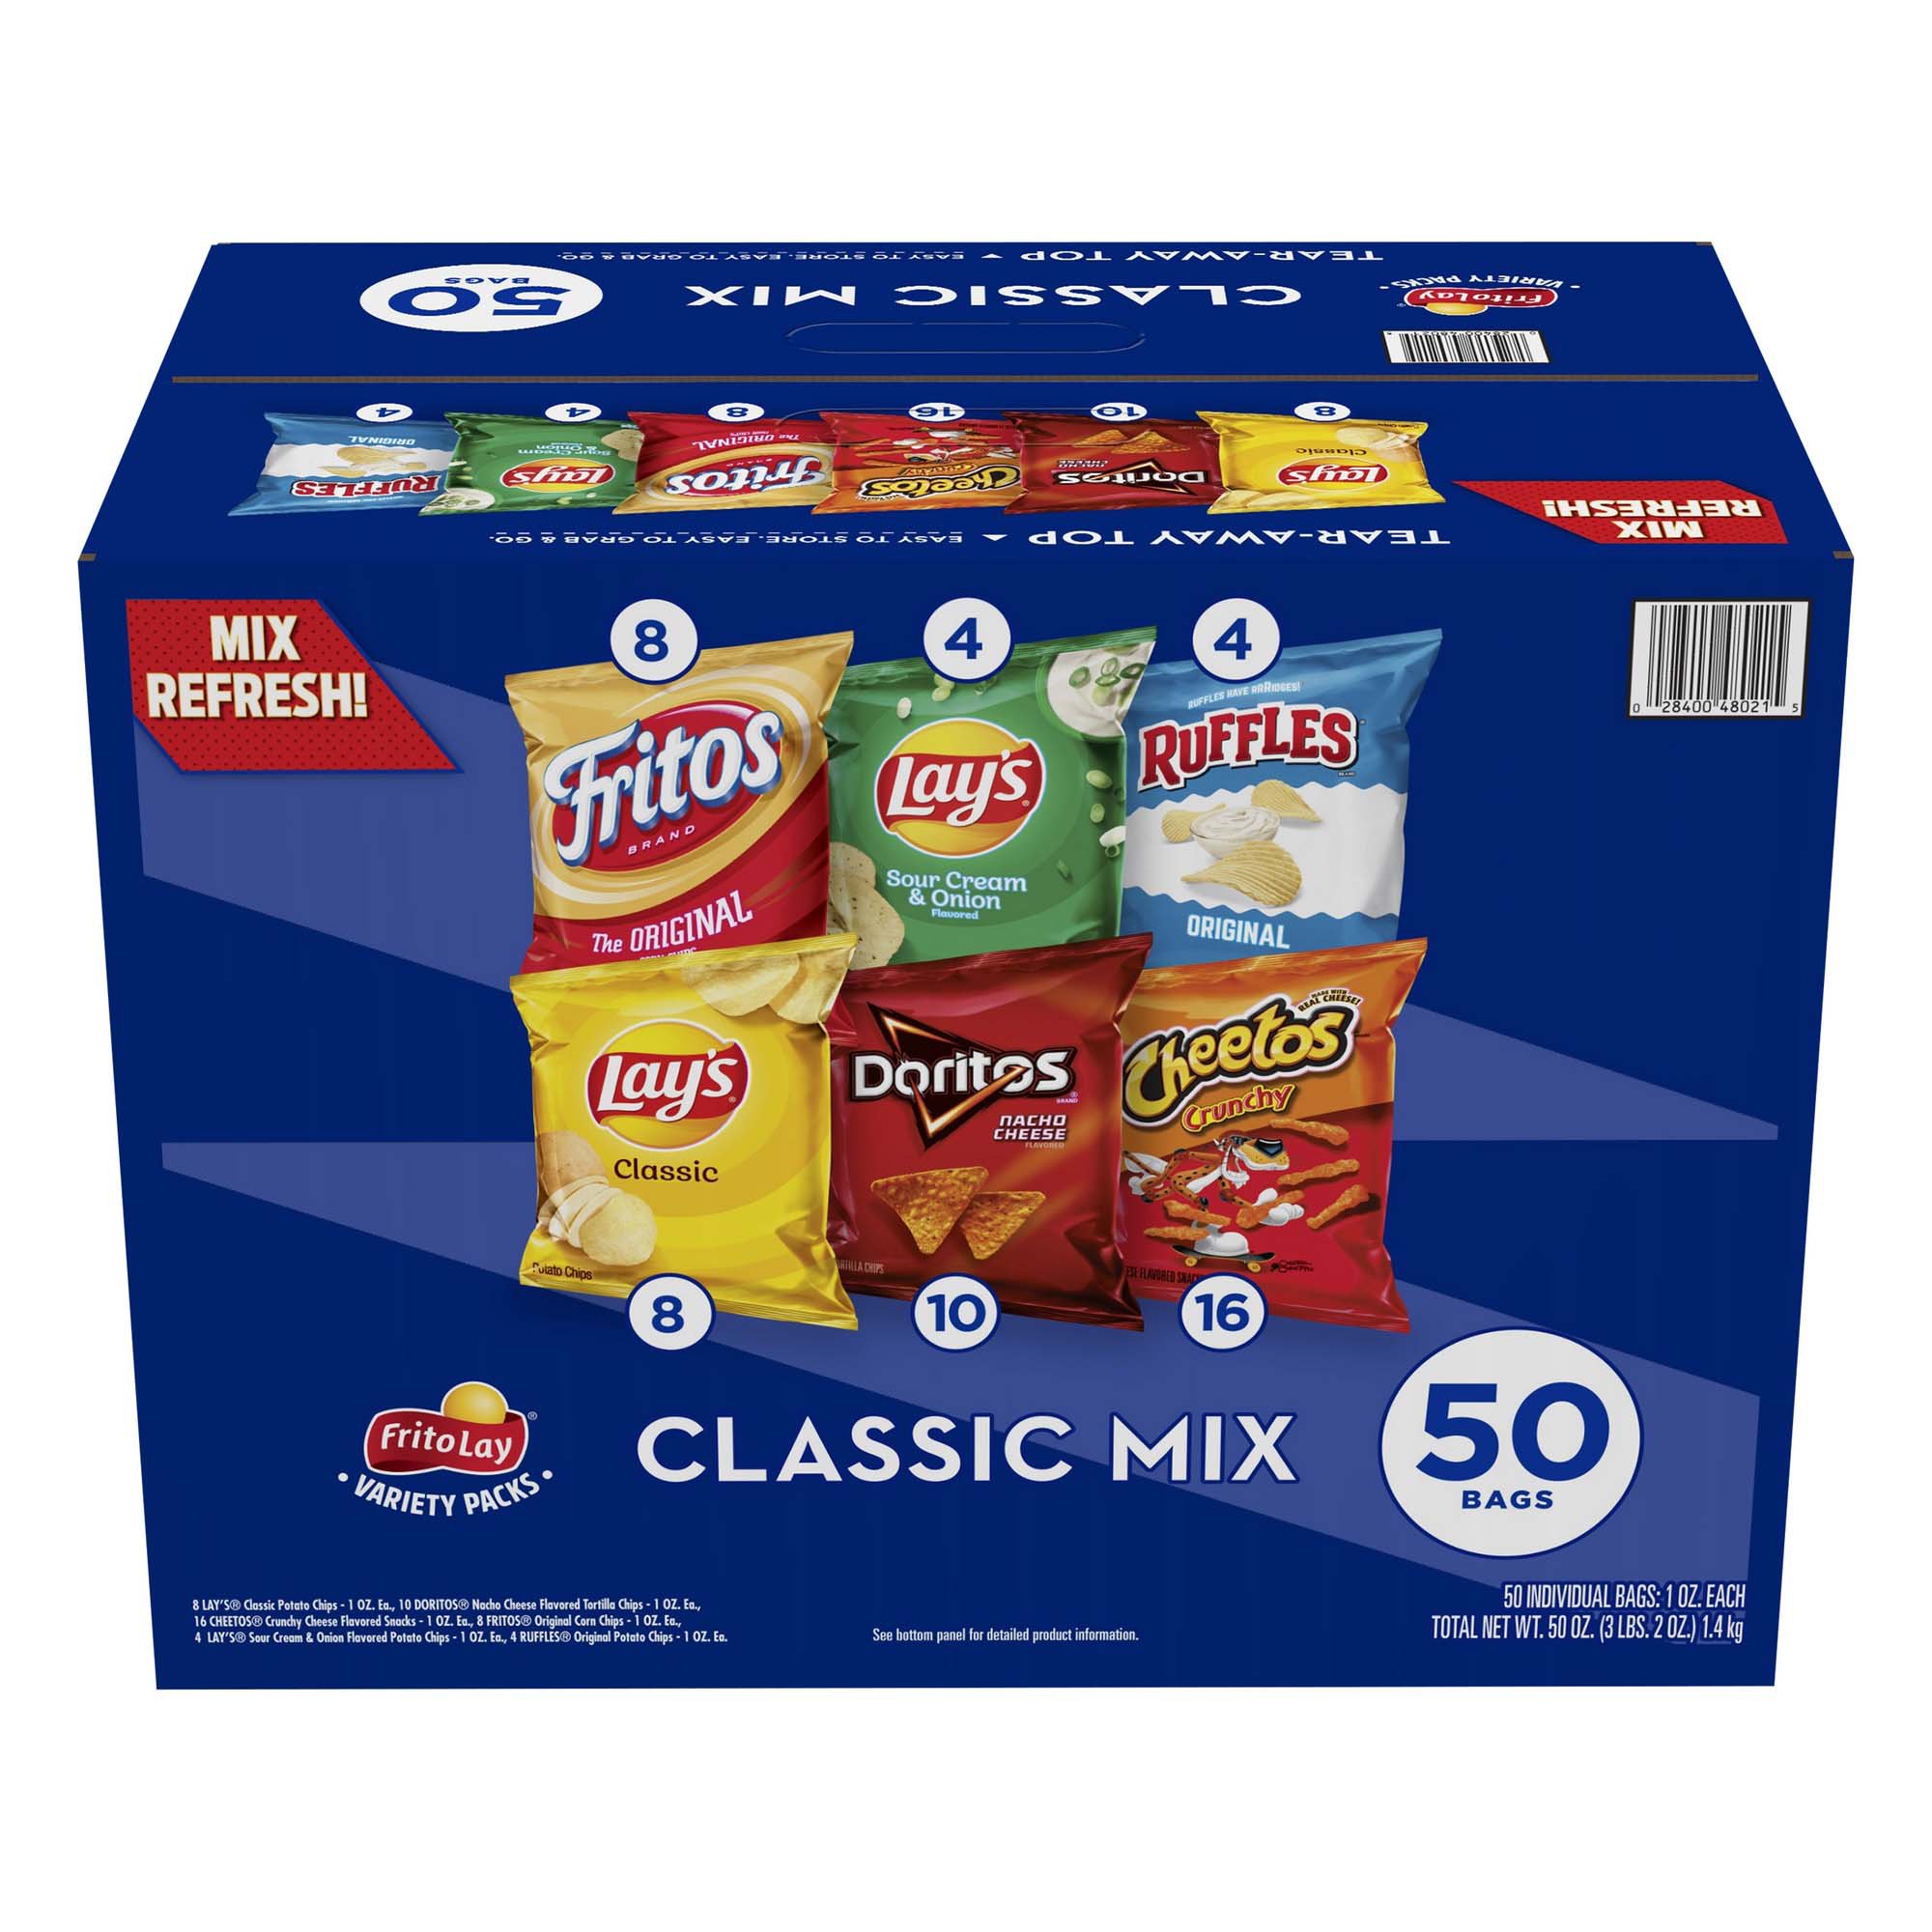 Frito Lay Doritos & Cheetos Mix Variety Pack Chips - Shop Chips at H-E-B